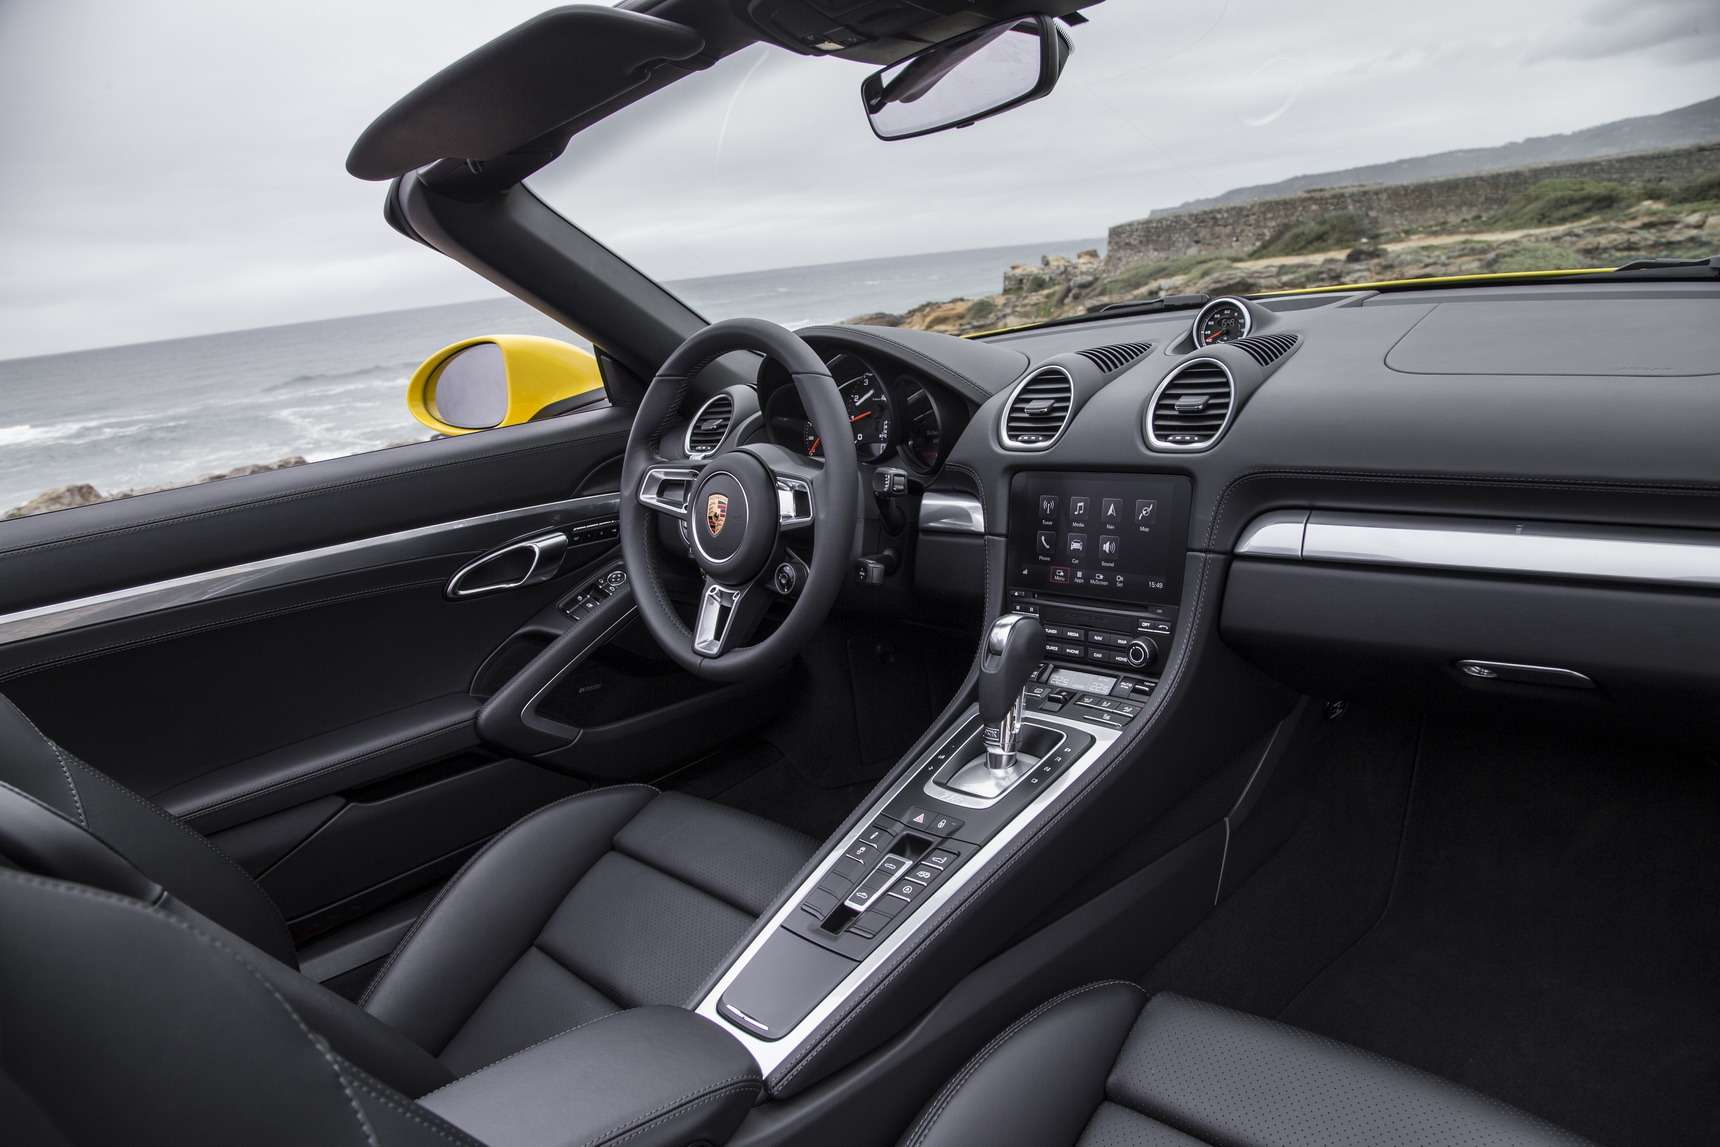 Интерьер 718-й от салона предшественника отличают дефлекторы иной формы да мультимедийная система Porsche Communication Management с сенсорным экраном, вошедшая в базовое оснащение всех новых Porsche Boxster. За навигационный модуль придется доплатить.